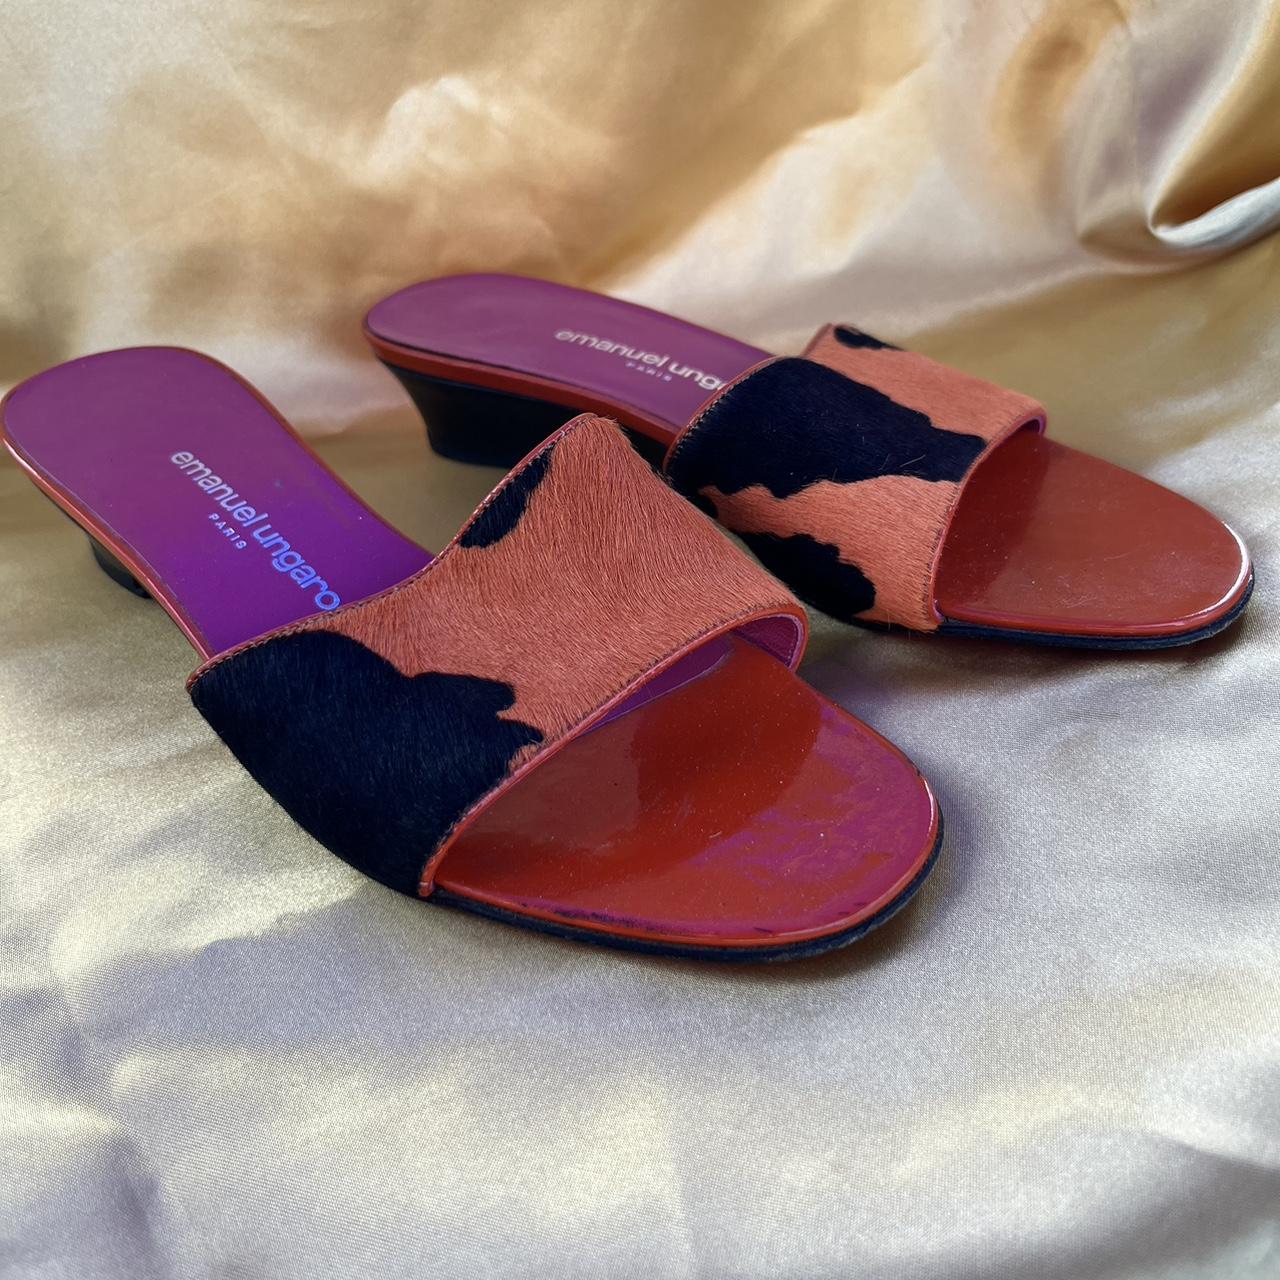 Emanuel Ungaro Women's Pink and Orange Sandals